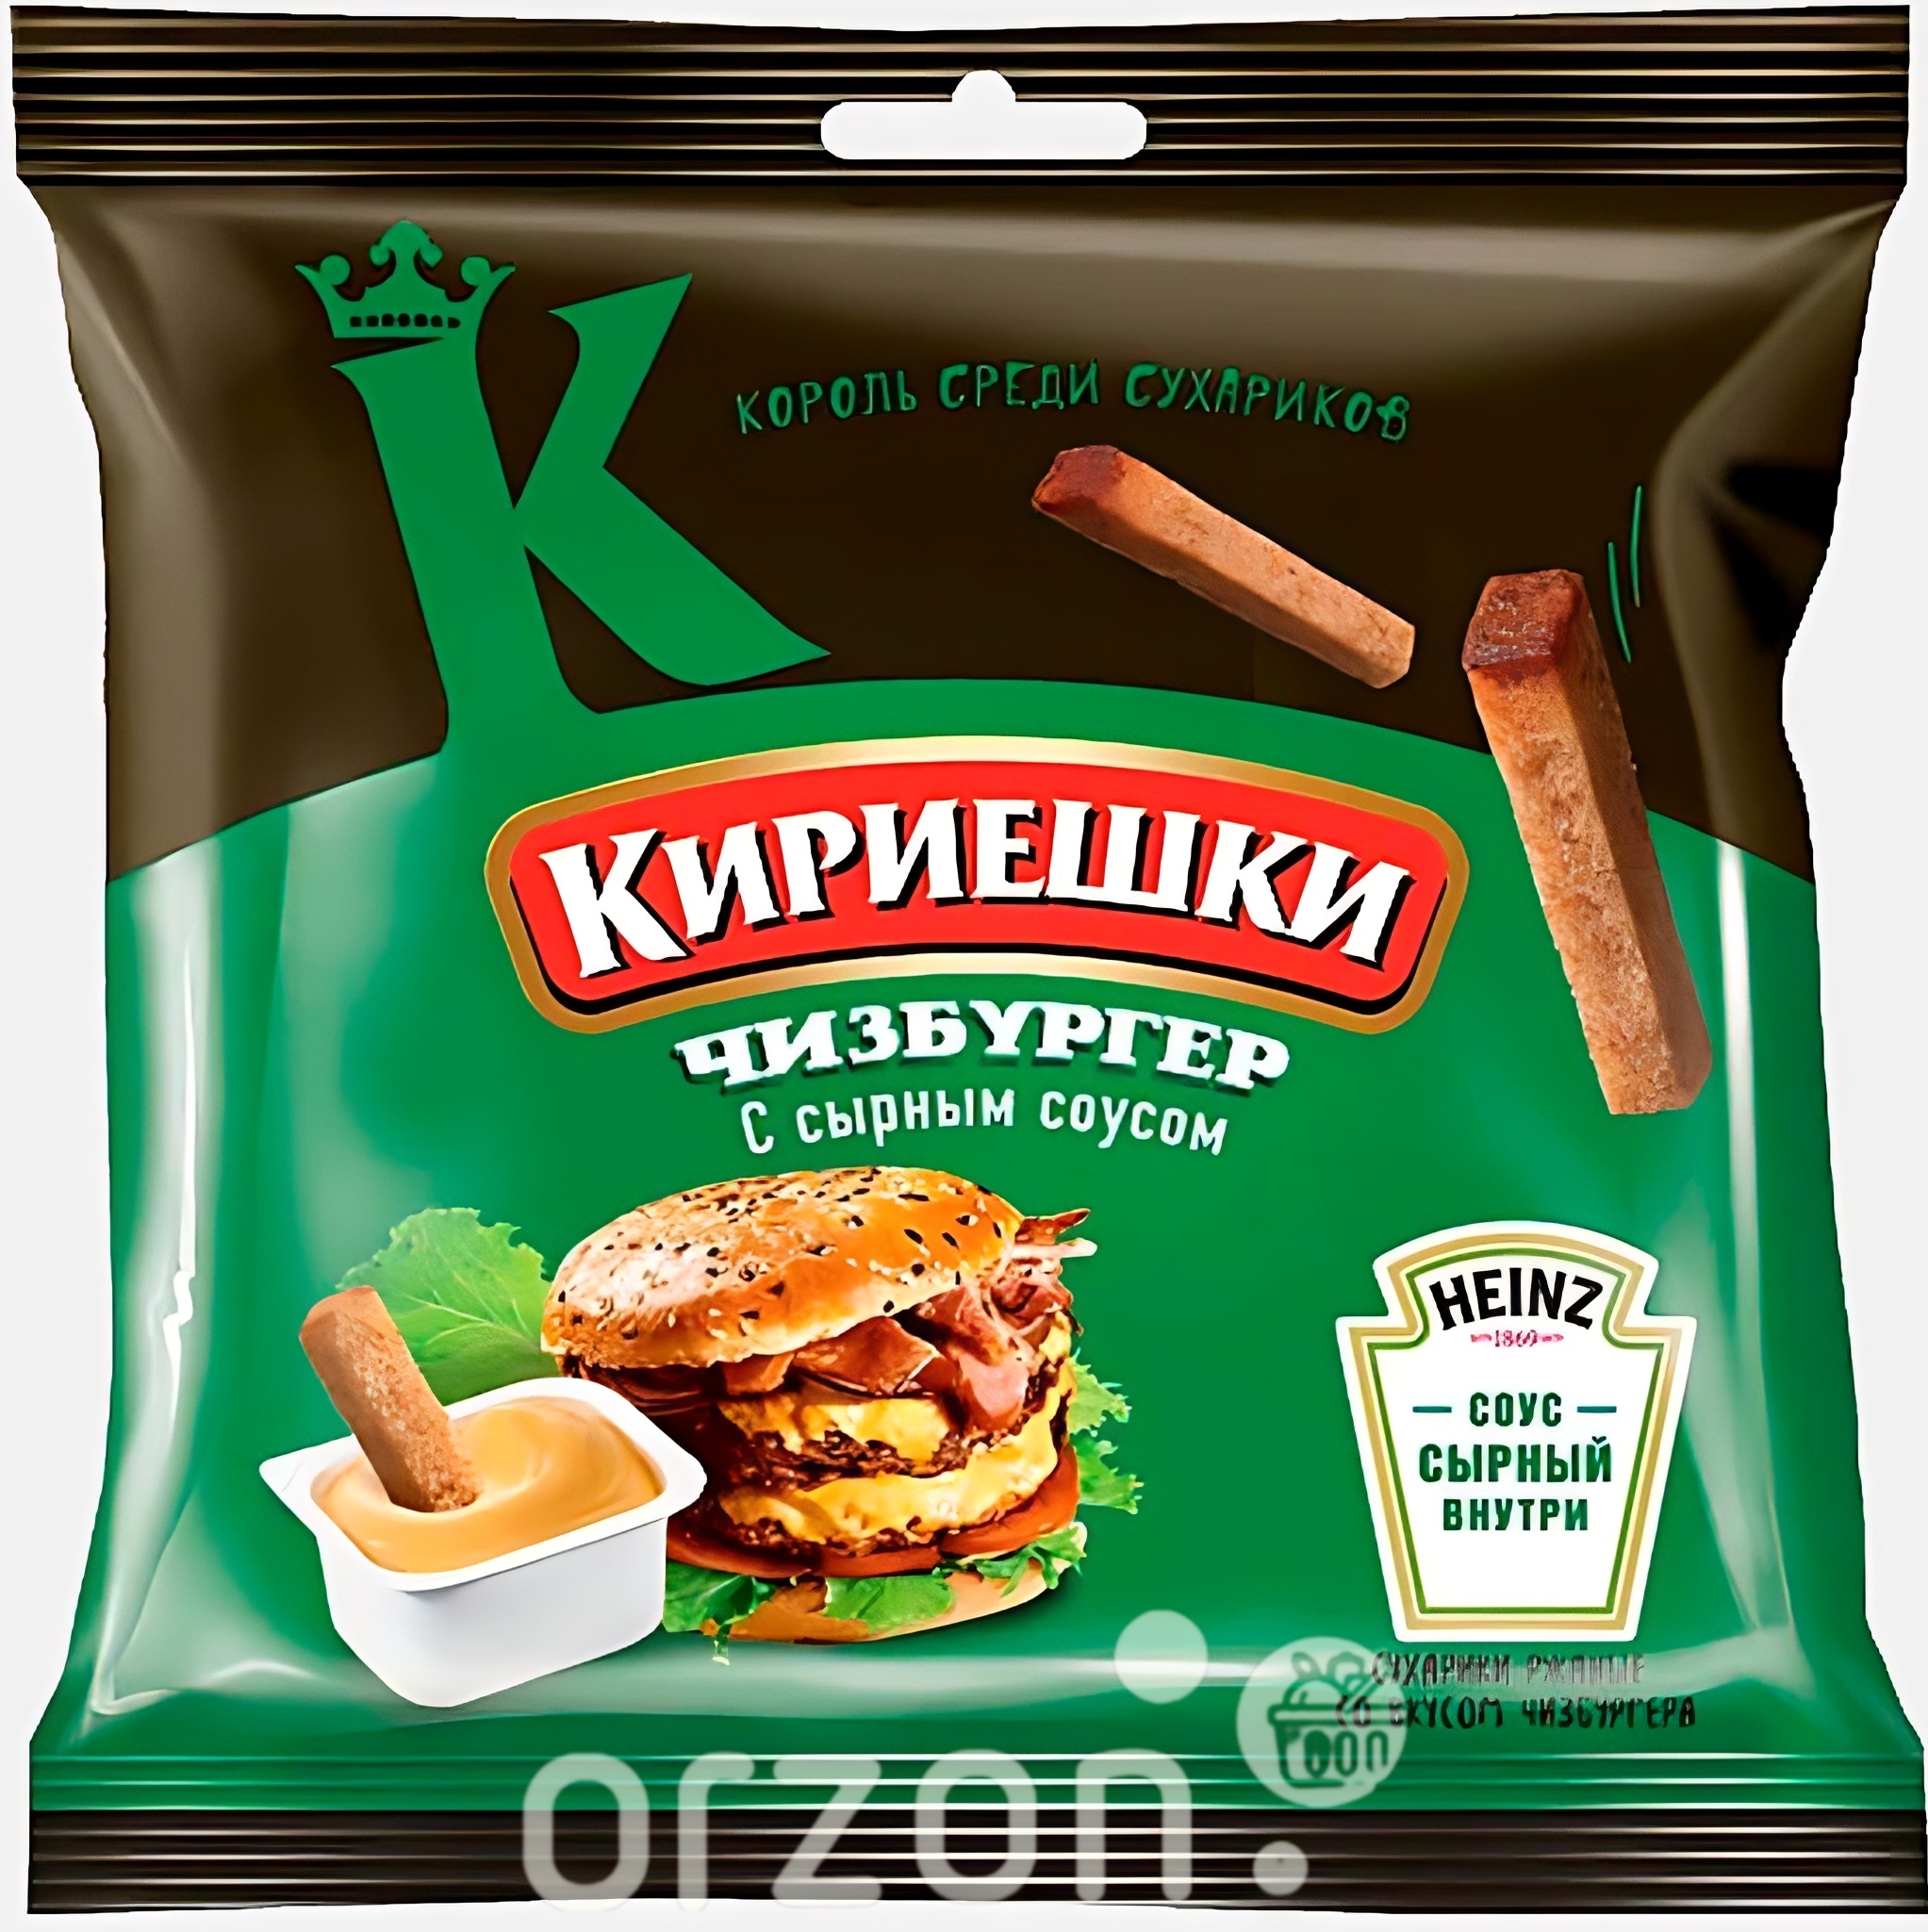 Сухарики "Кириешки" Чизбургер с сырным соусом 60 гр